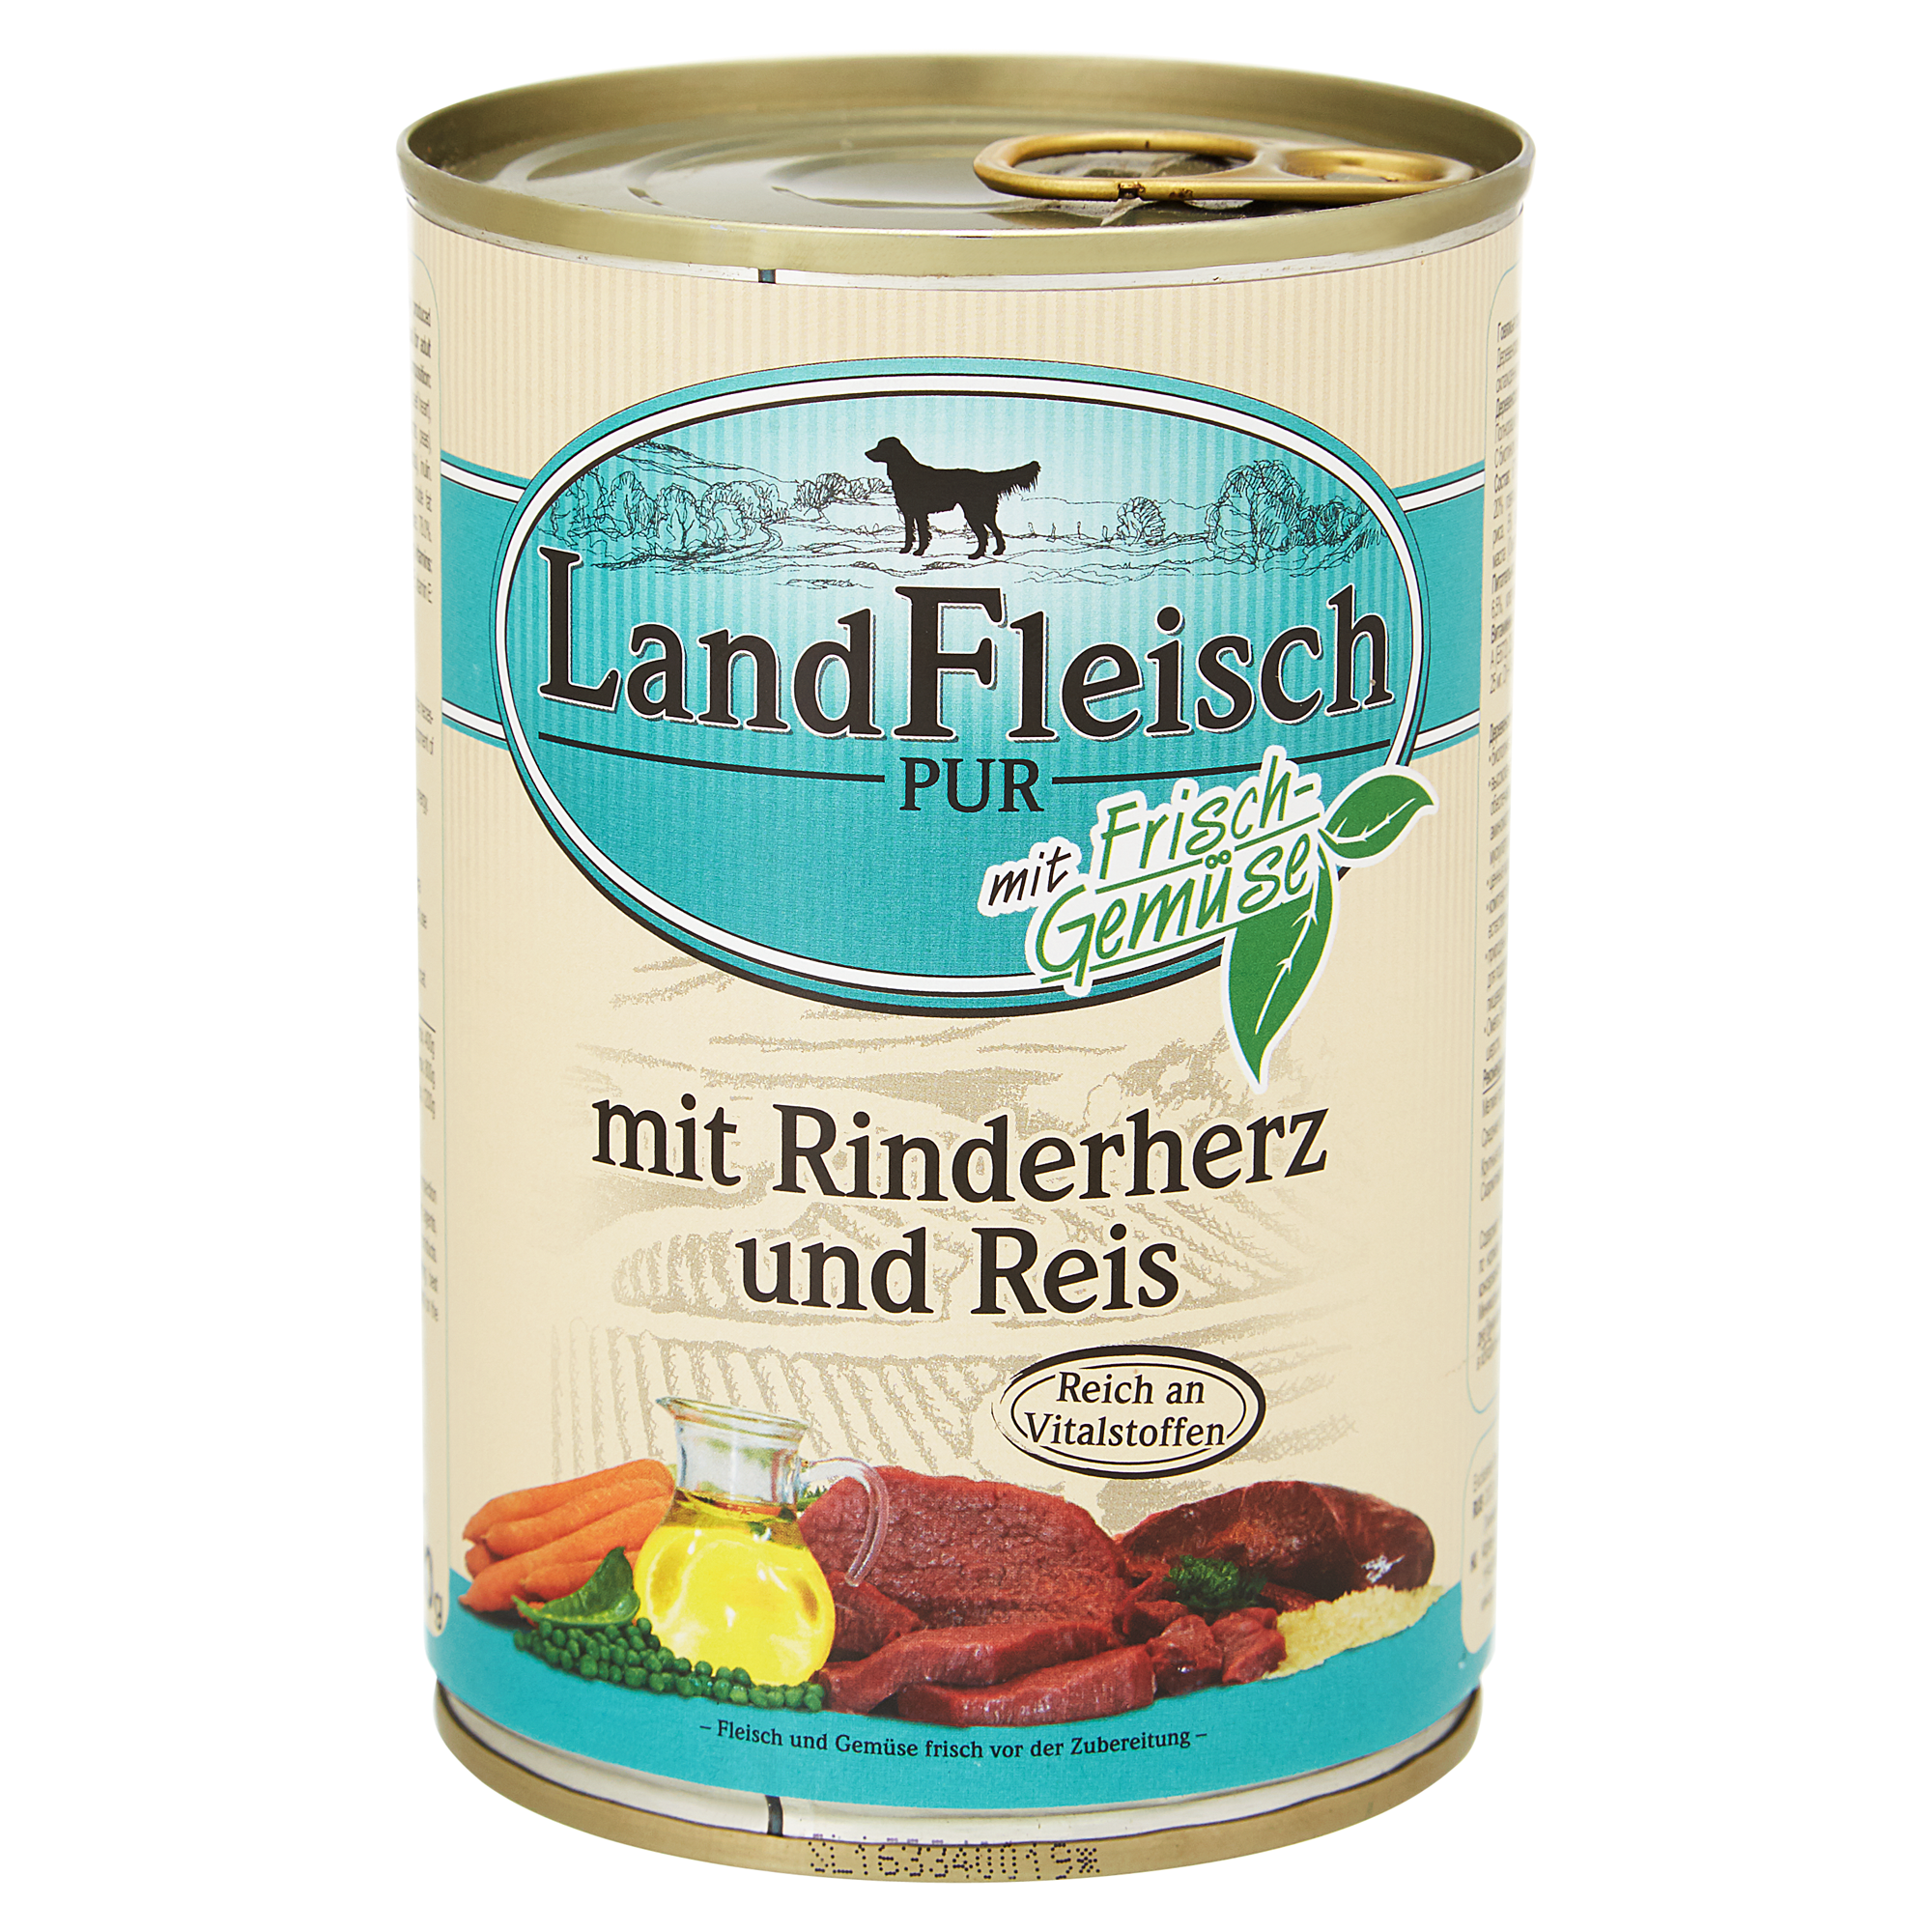 Hundenassfutter "Pur" mit Frischgemüse/Rinderherz/Reis 400 g + product picture